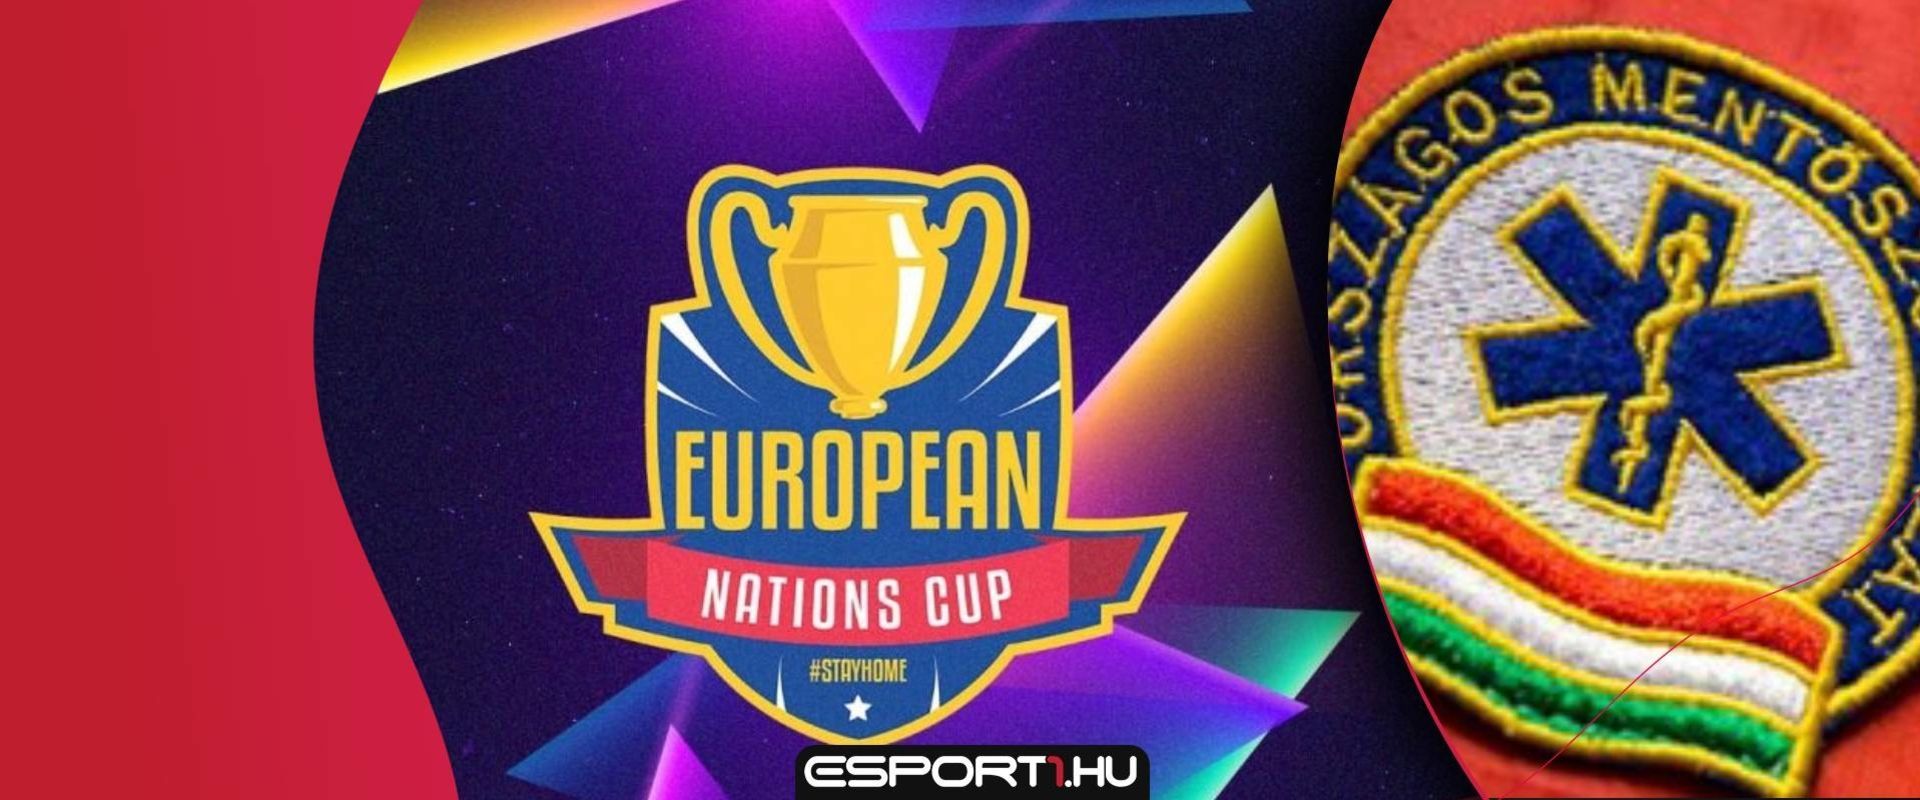 Most rád is szükség van, ma este indul a jótékonysági European Nations Cup